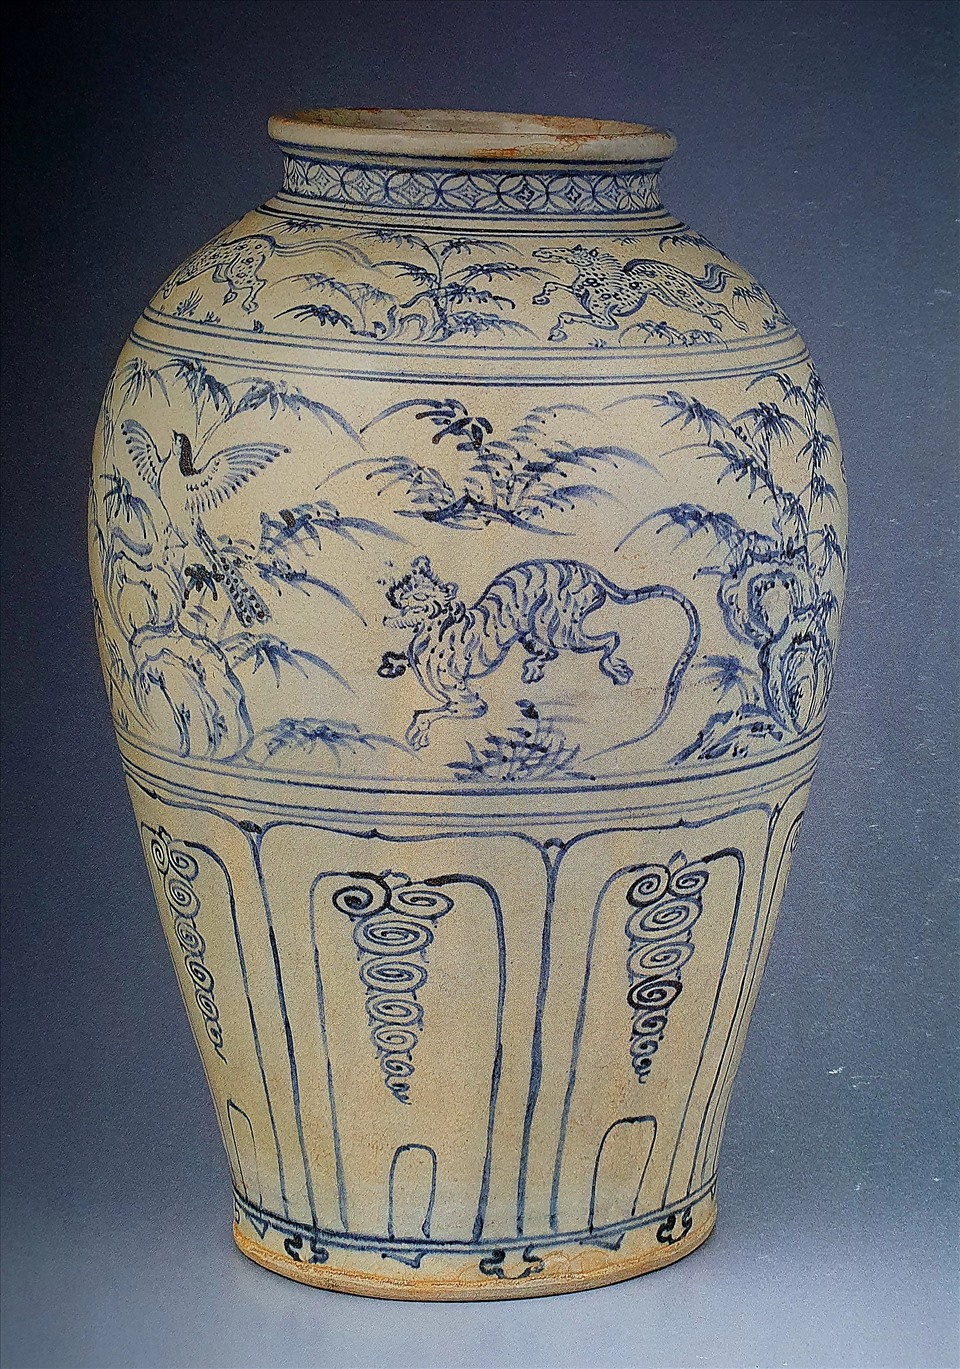 Hổ trên gốm hoa lam, thế kỷ 15, sưu tập nước ngoài.